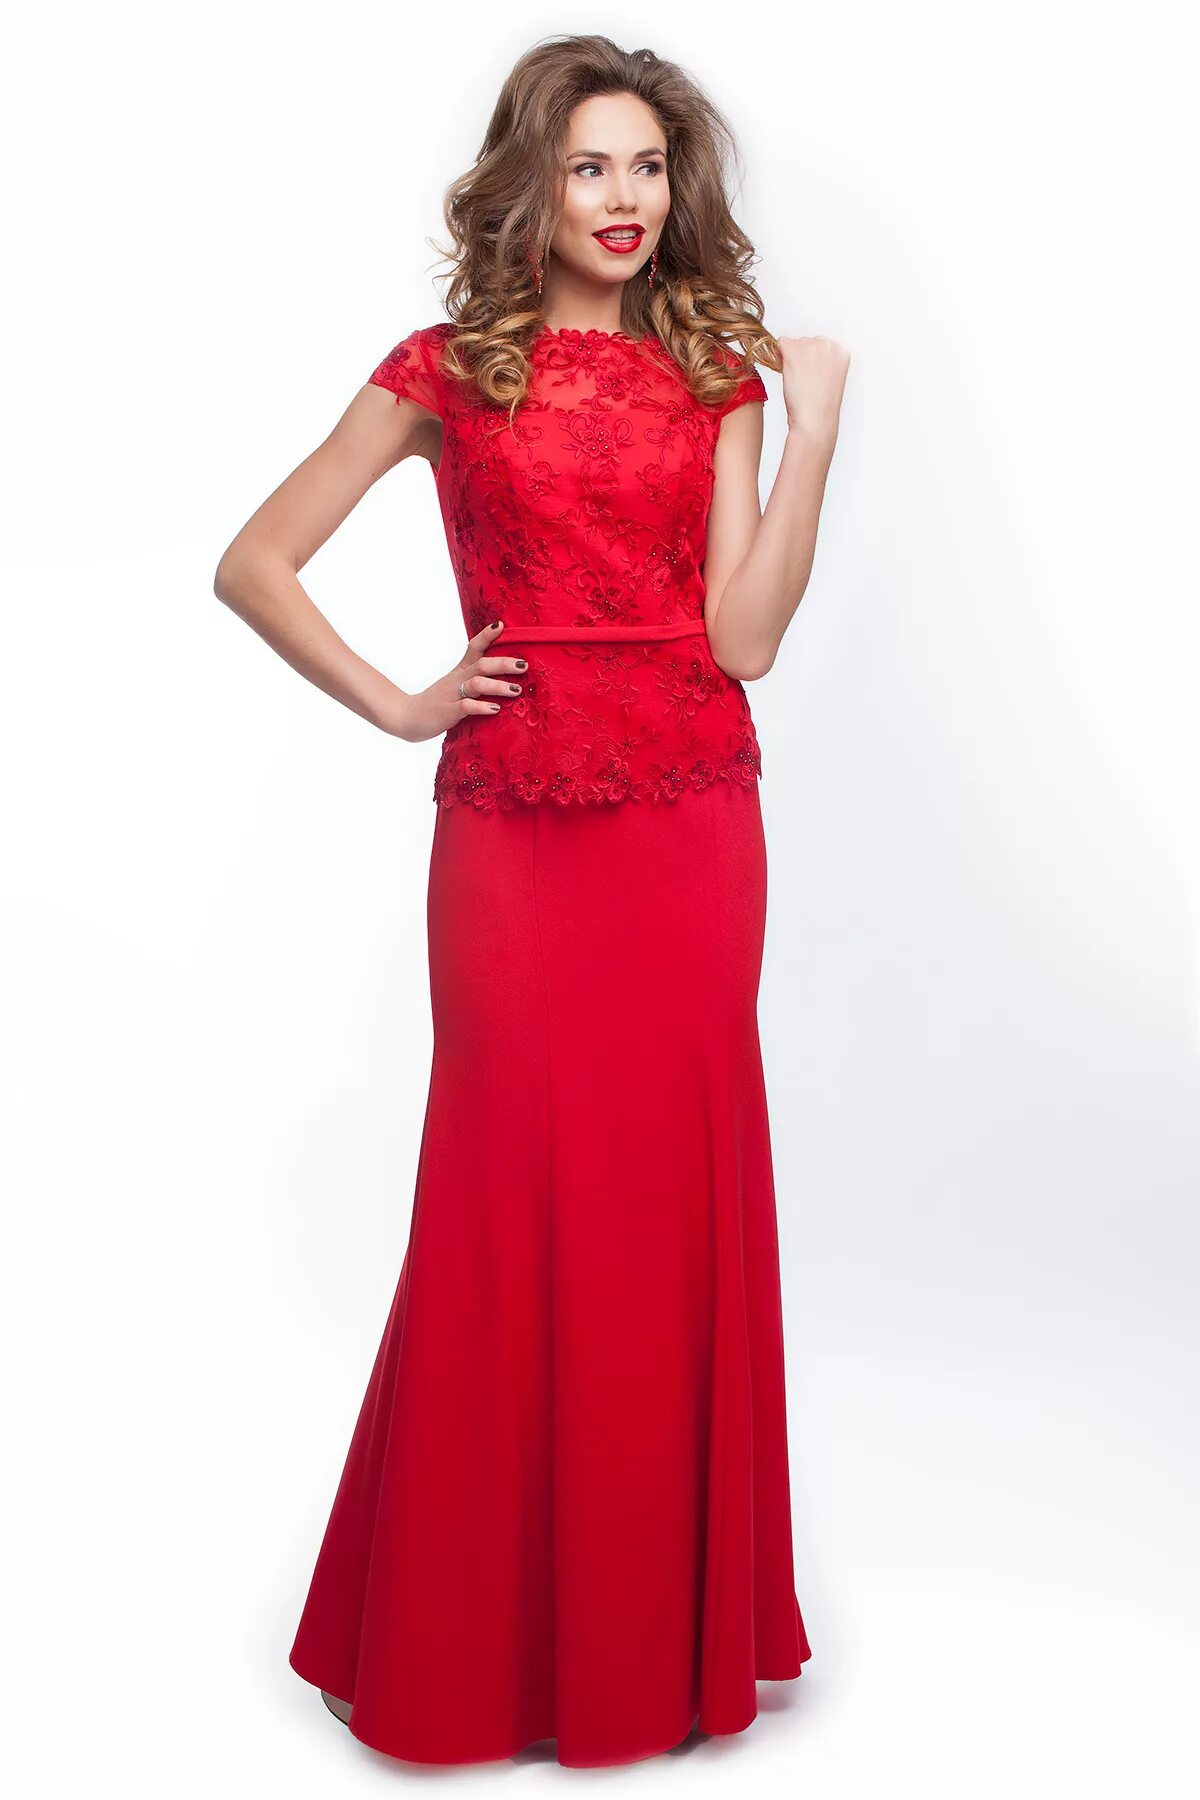 Недорогие платья екатеринбург. Вечернее платье. Красное платье. Красивое красное платье. Красивые вечерние платья.